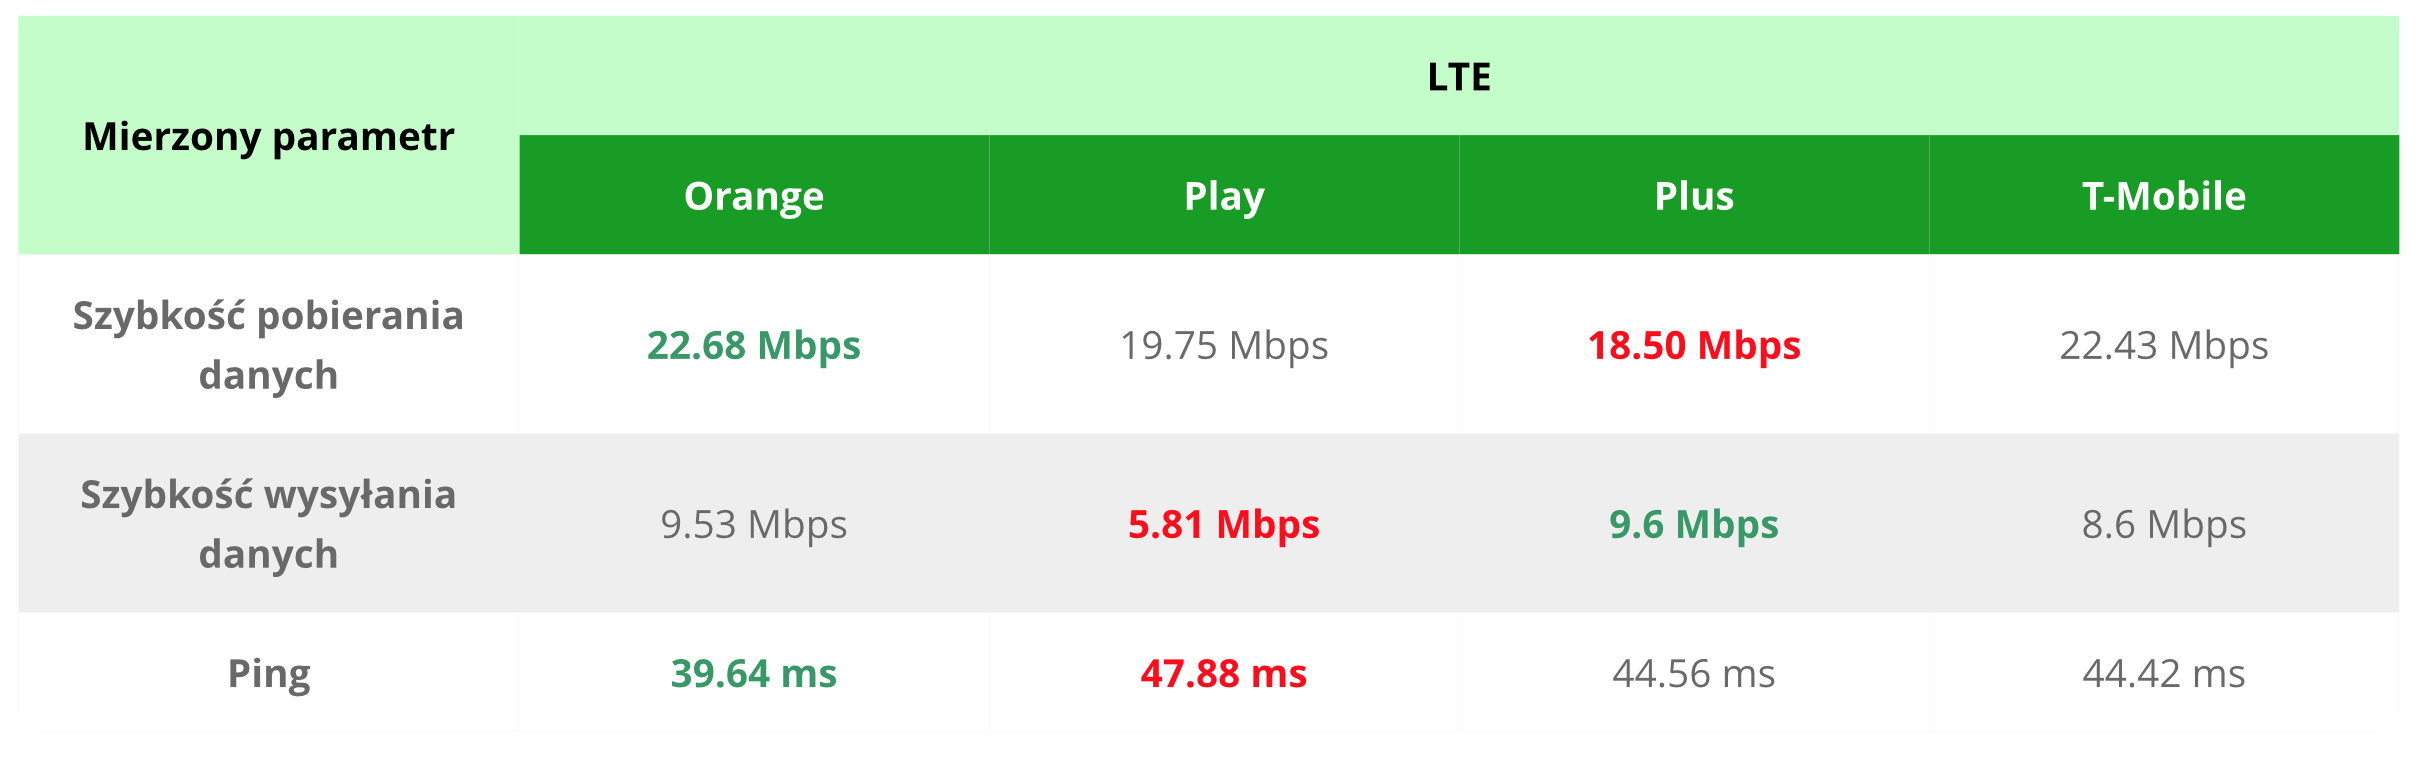 Zestawienie prędkości internetu mobilnego LTE (4G) u Polskich operatorów (grudzień 2017)